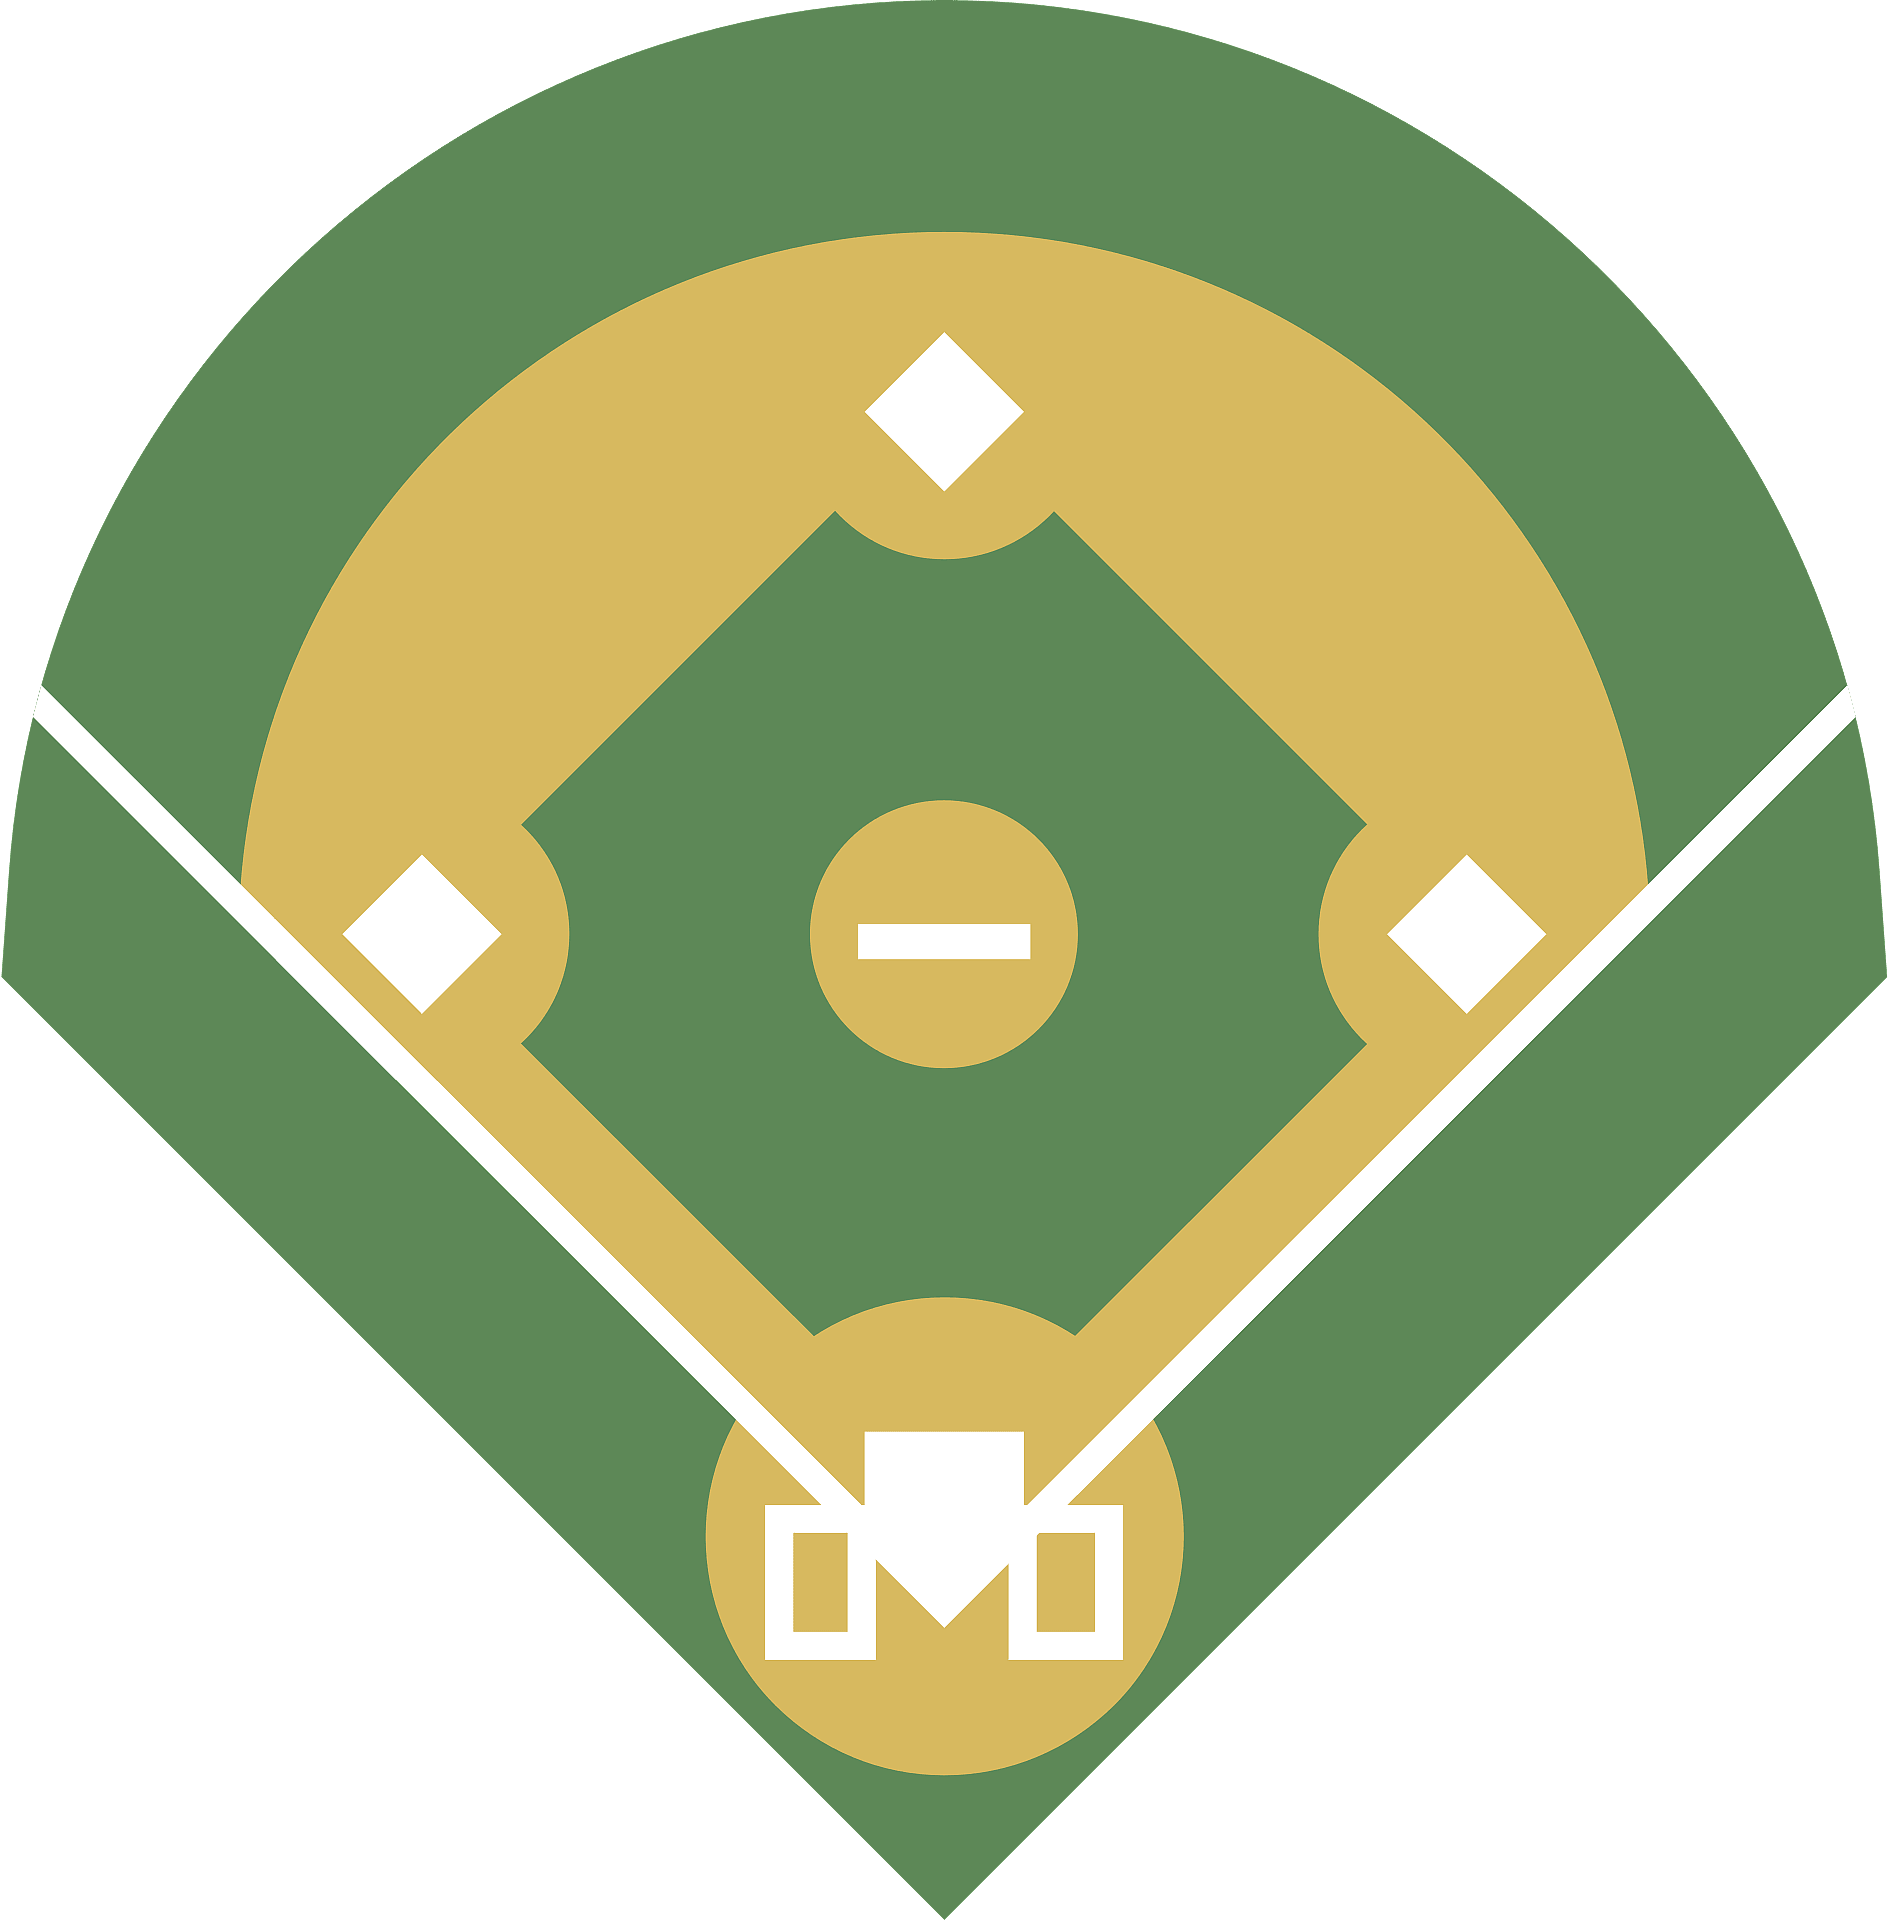 Baseball Field Cliparts, Stock Vector and Royalty Free Baseball - Clip ...